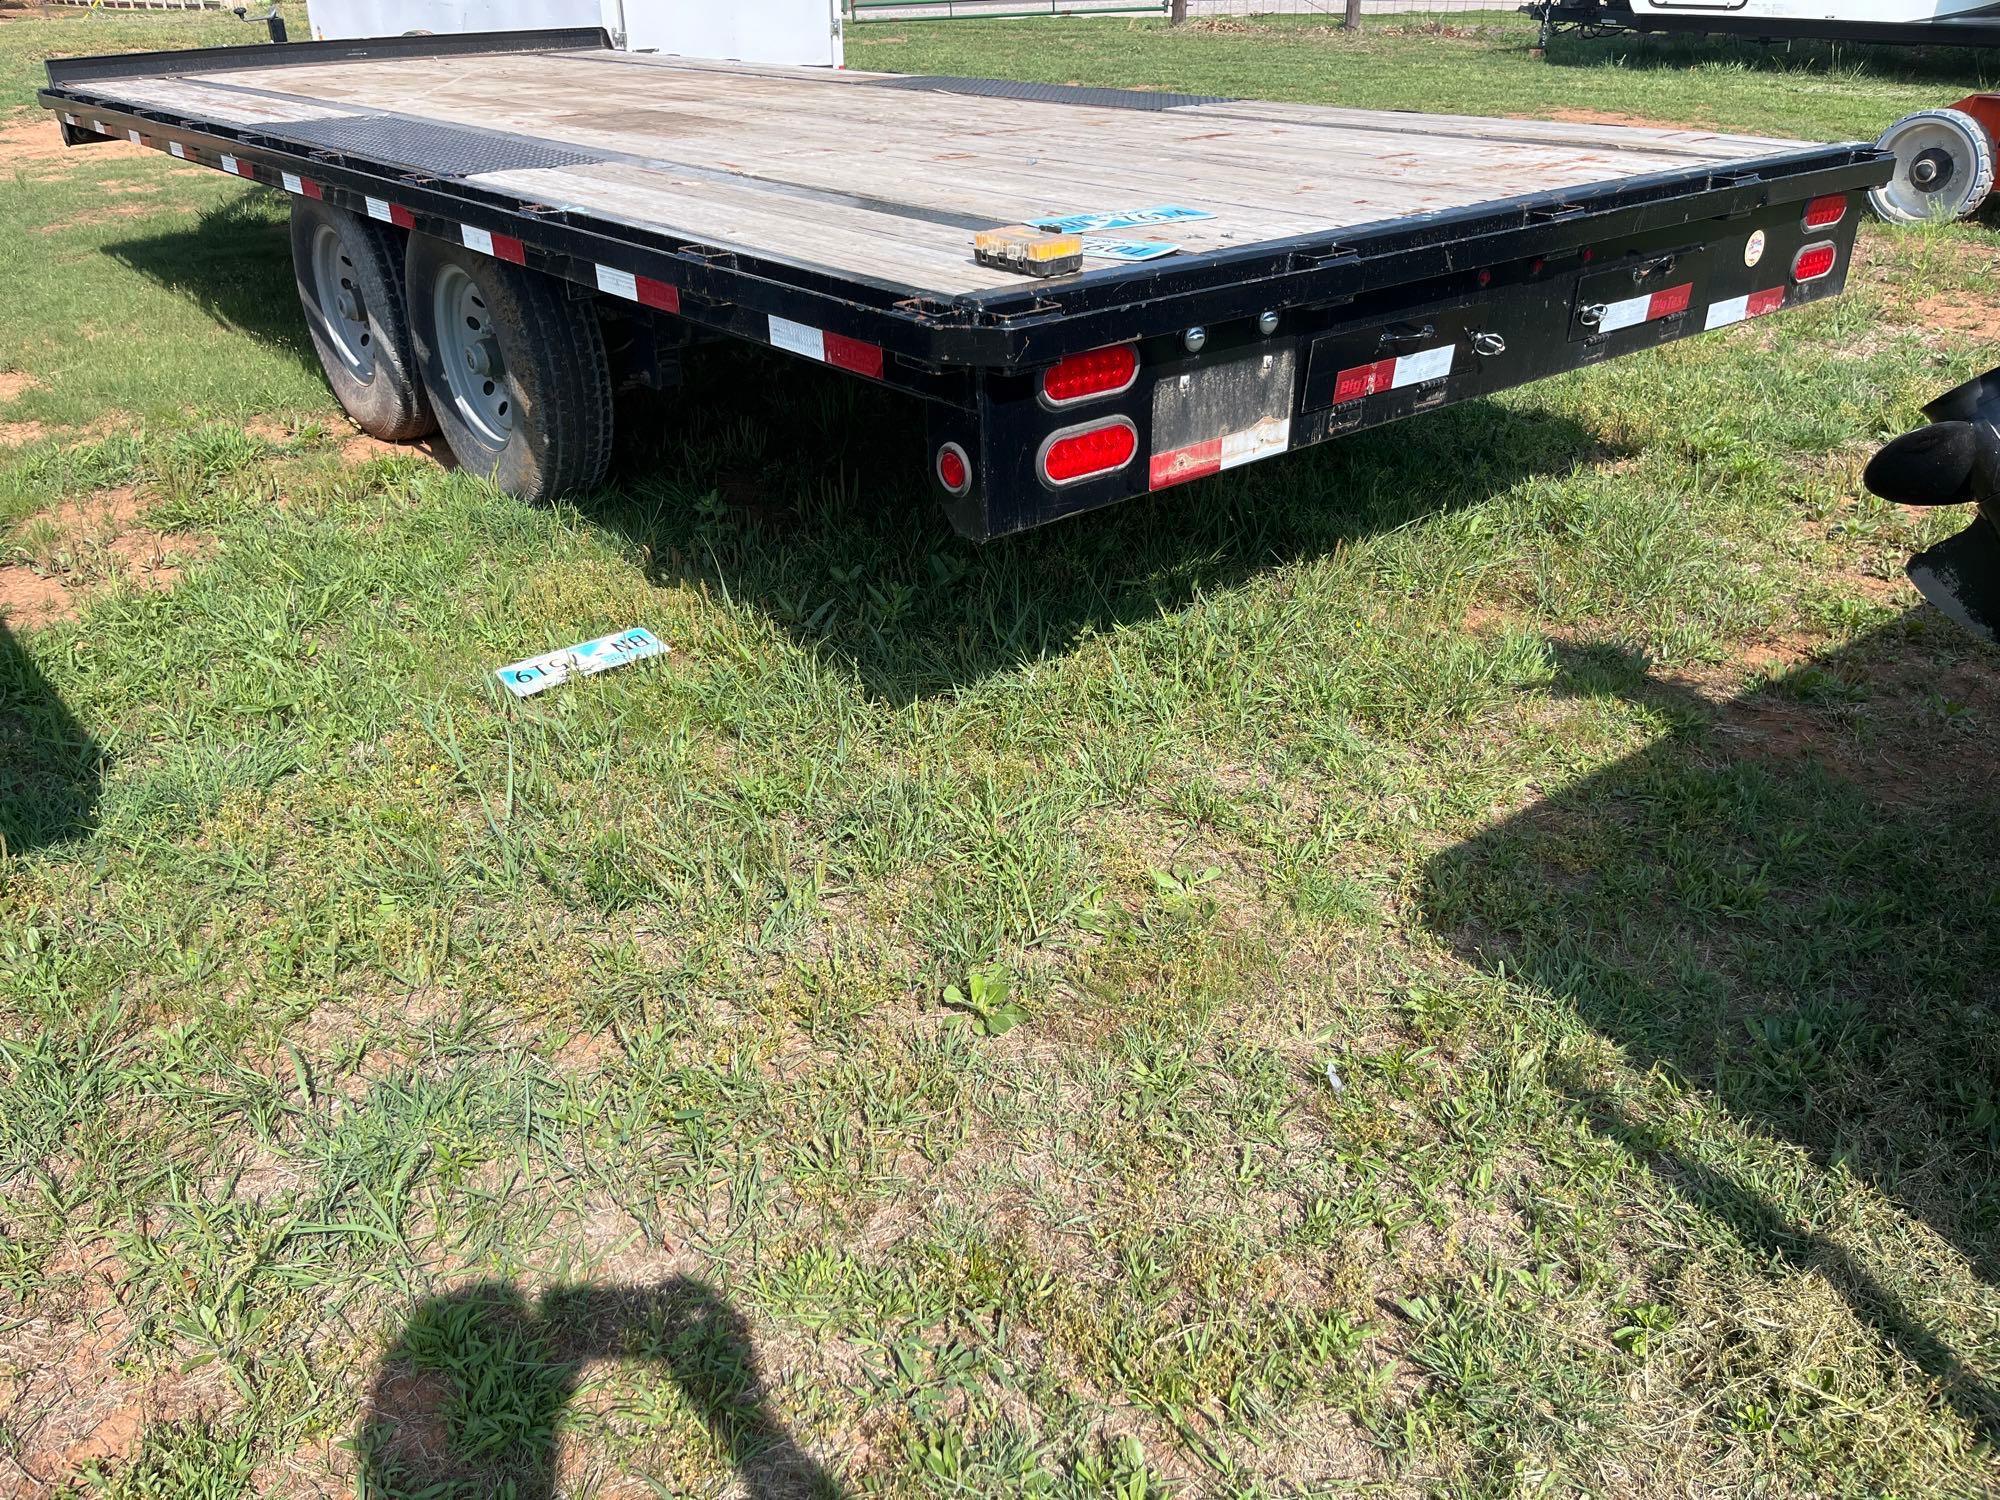 2017 Big Tex 140A flatbed trailer 20ft